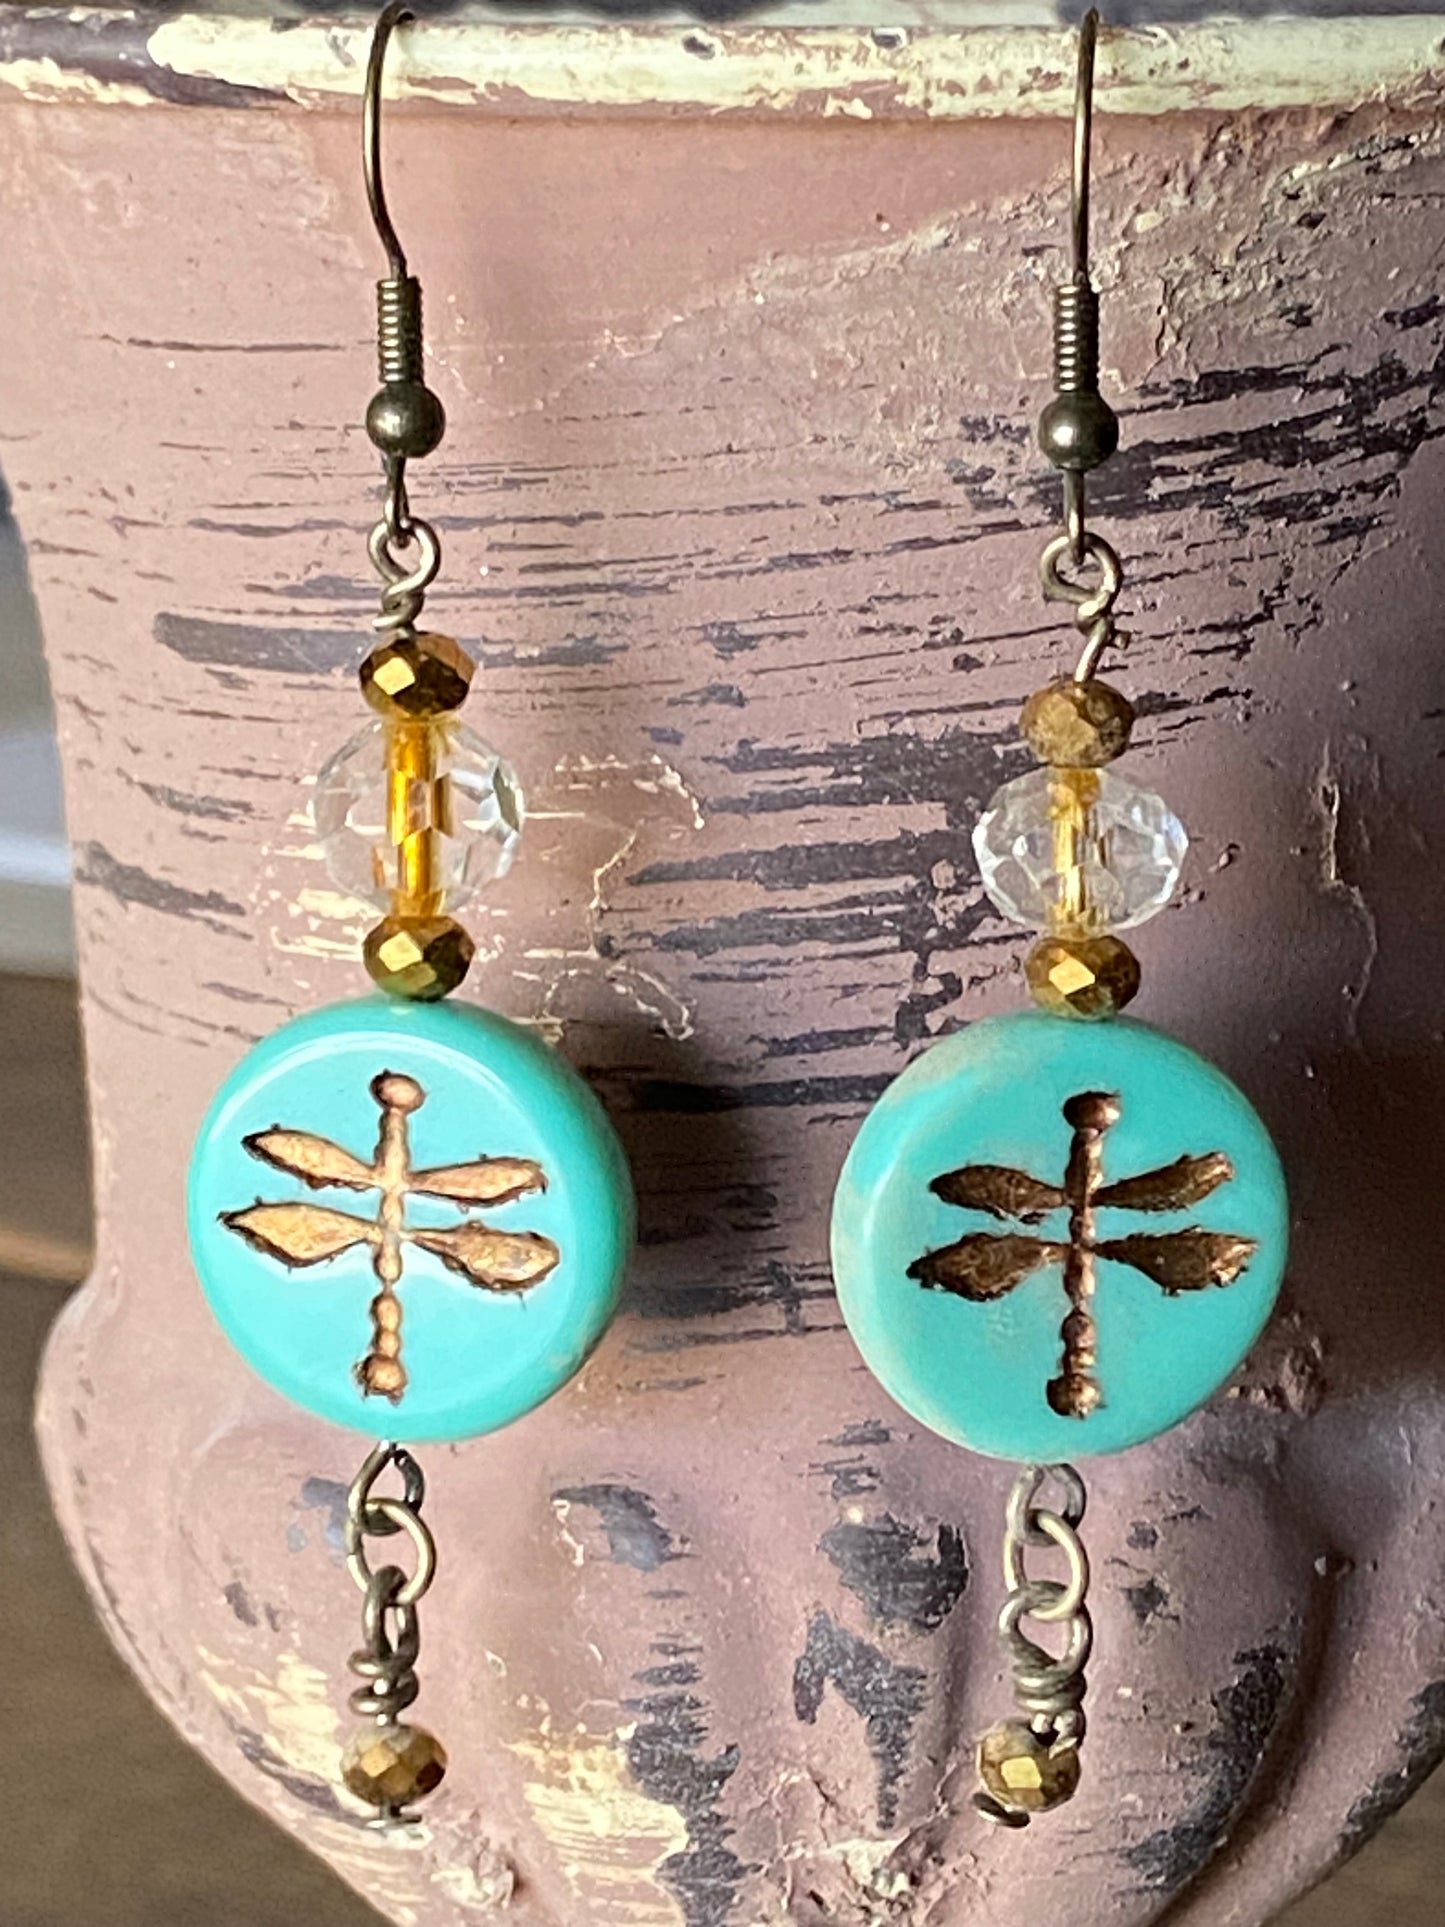 Bronze Dragonfly Earrings